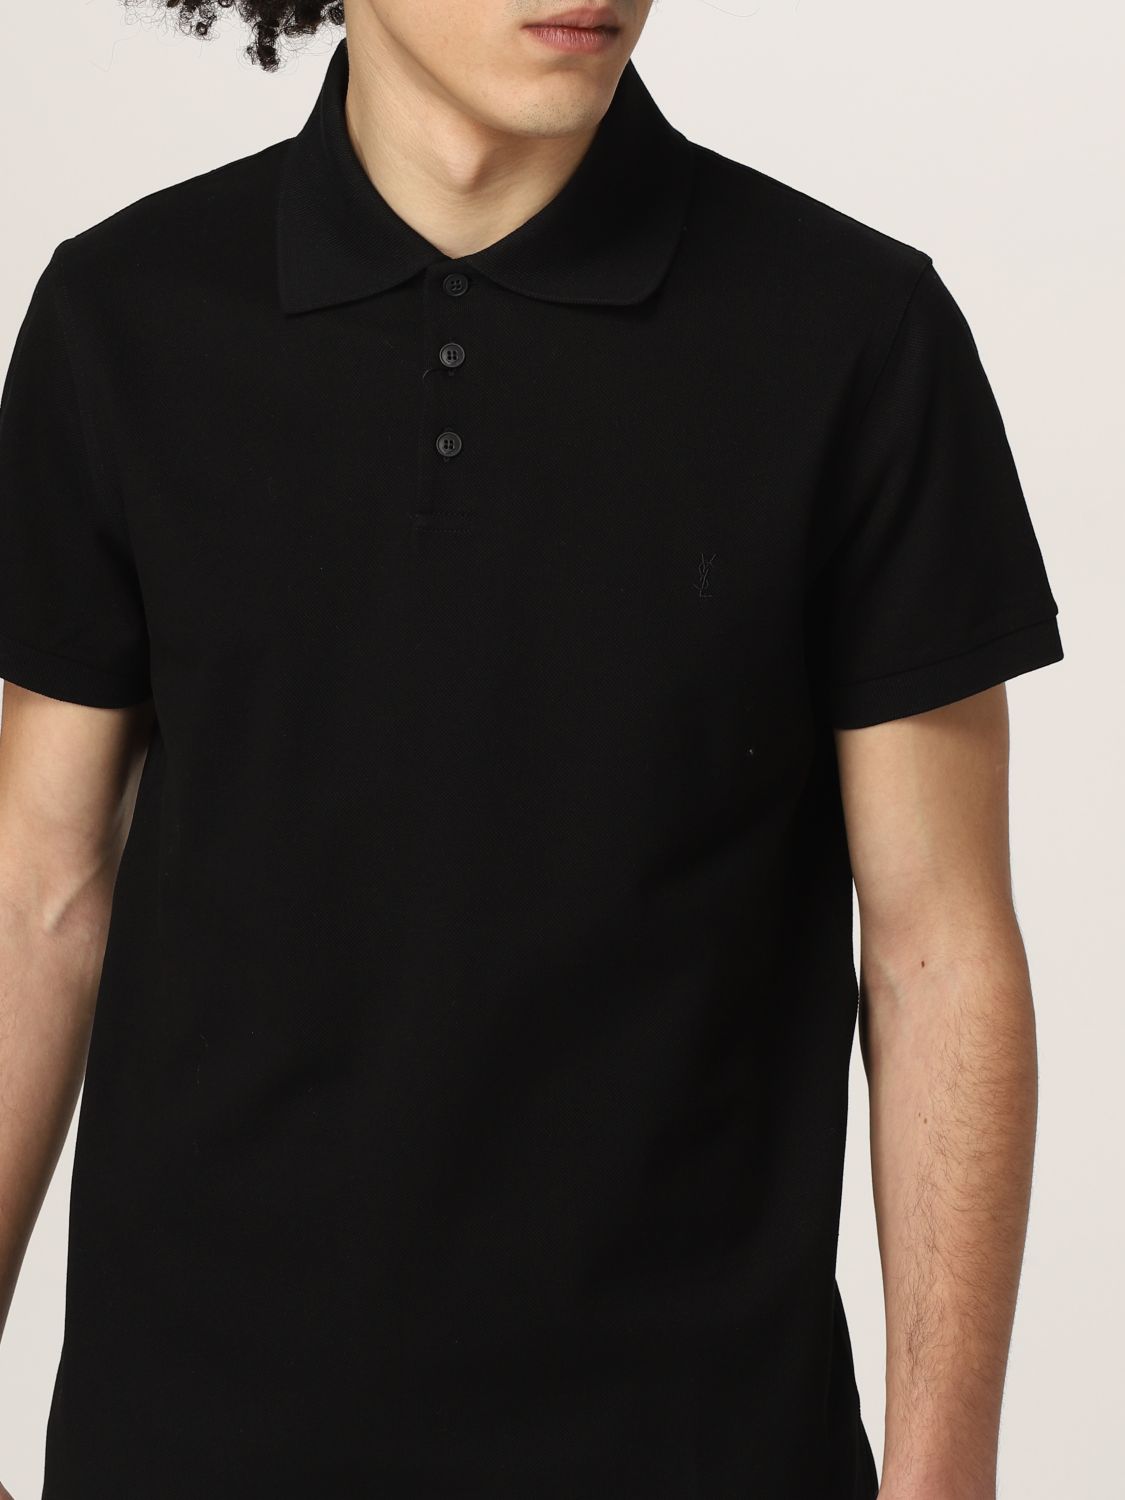 Polo shirt Saint Laurent: Saint Laurent piqué cotton basic polo t-shirt black 5